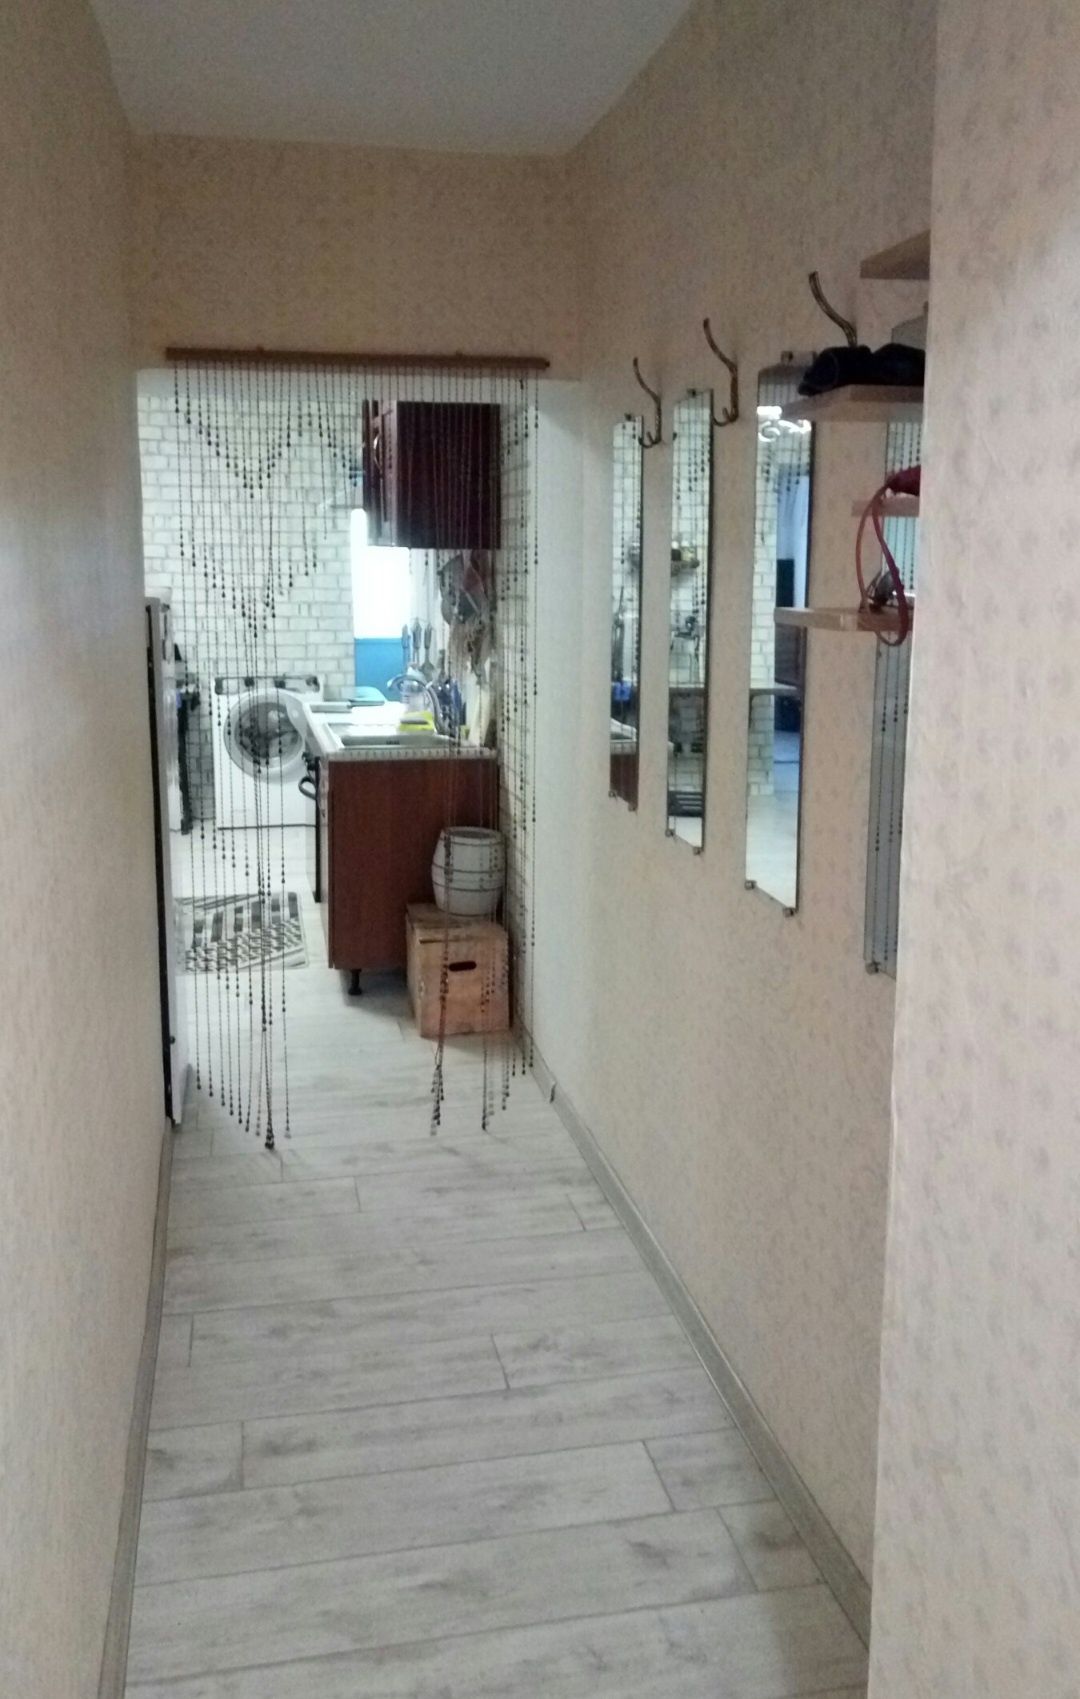 Продам 2-ком. двухкомнатную квартиру в Приднепровске.